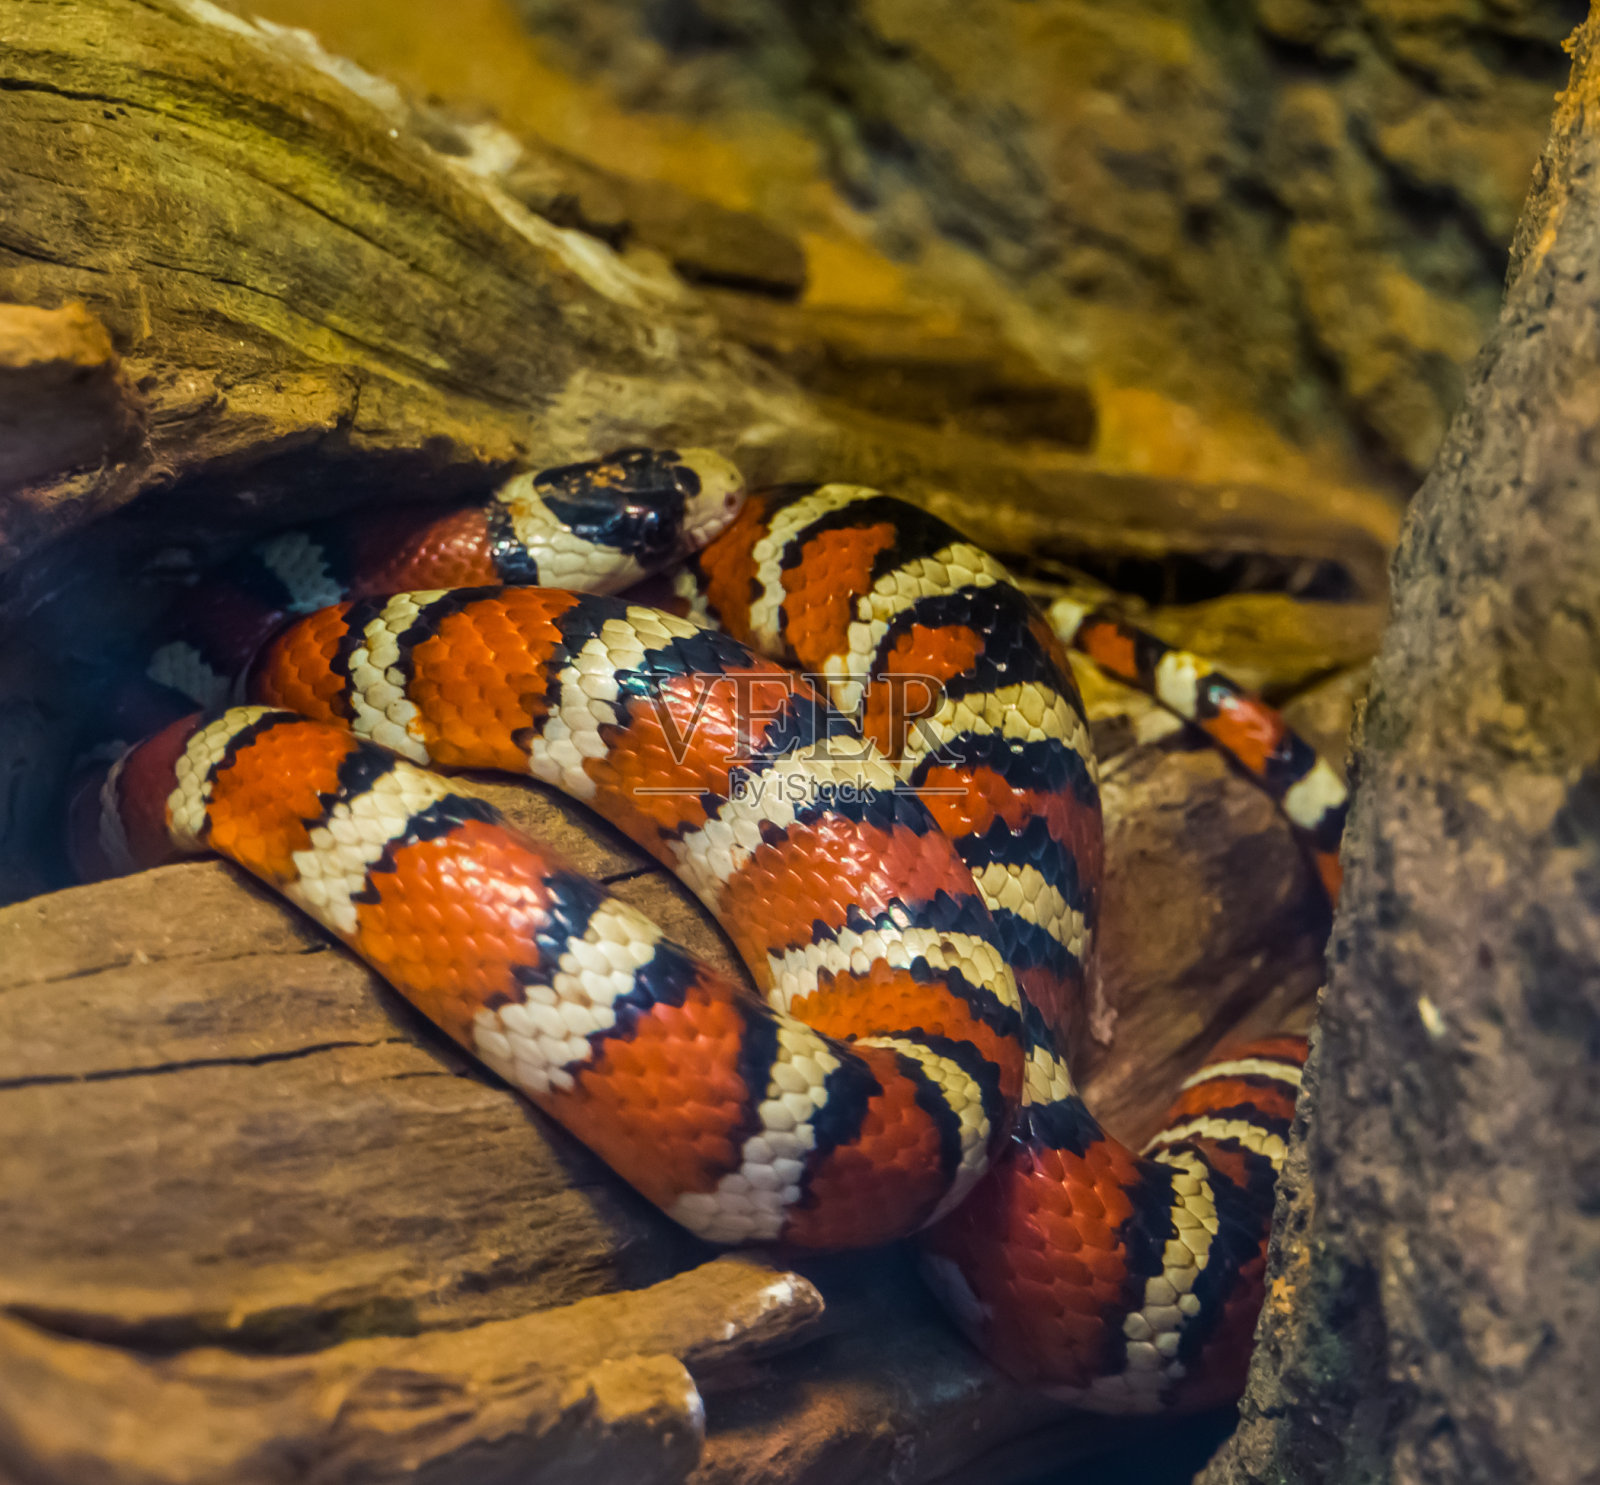 亚利桑那州山王蛇的颜色有红、黄、黑三种，色彩鲜艳的蛇来自美国，在爬虫文化中很受欢迎的宠物照片摄影图片